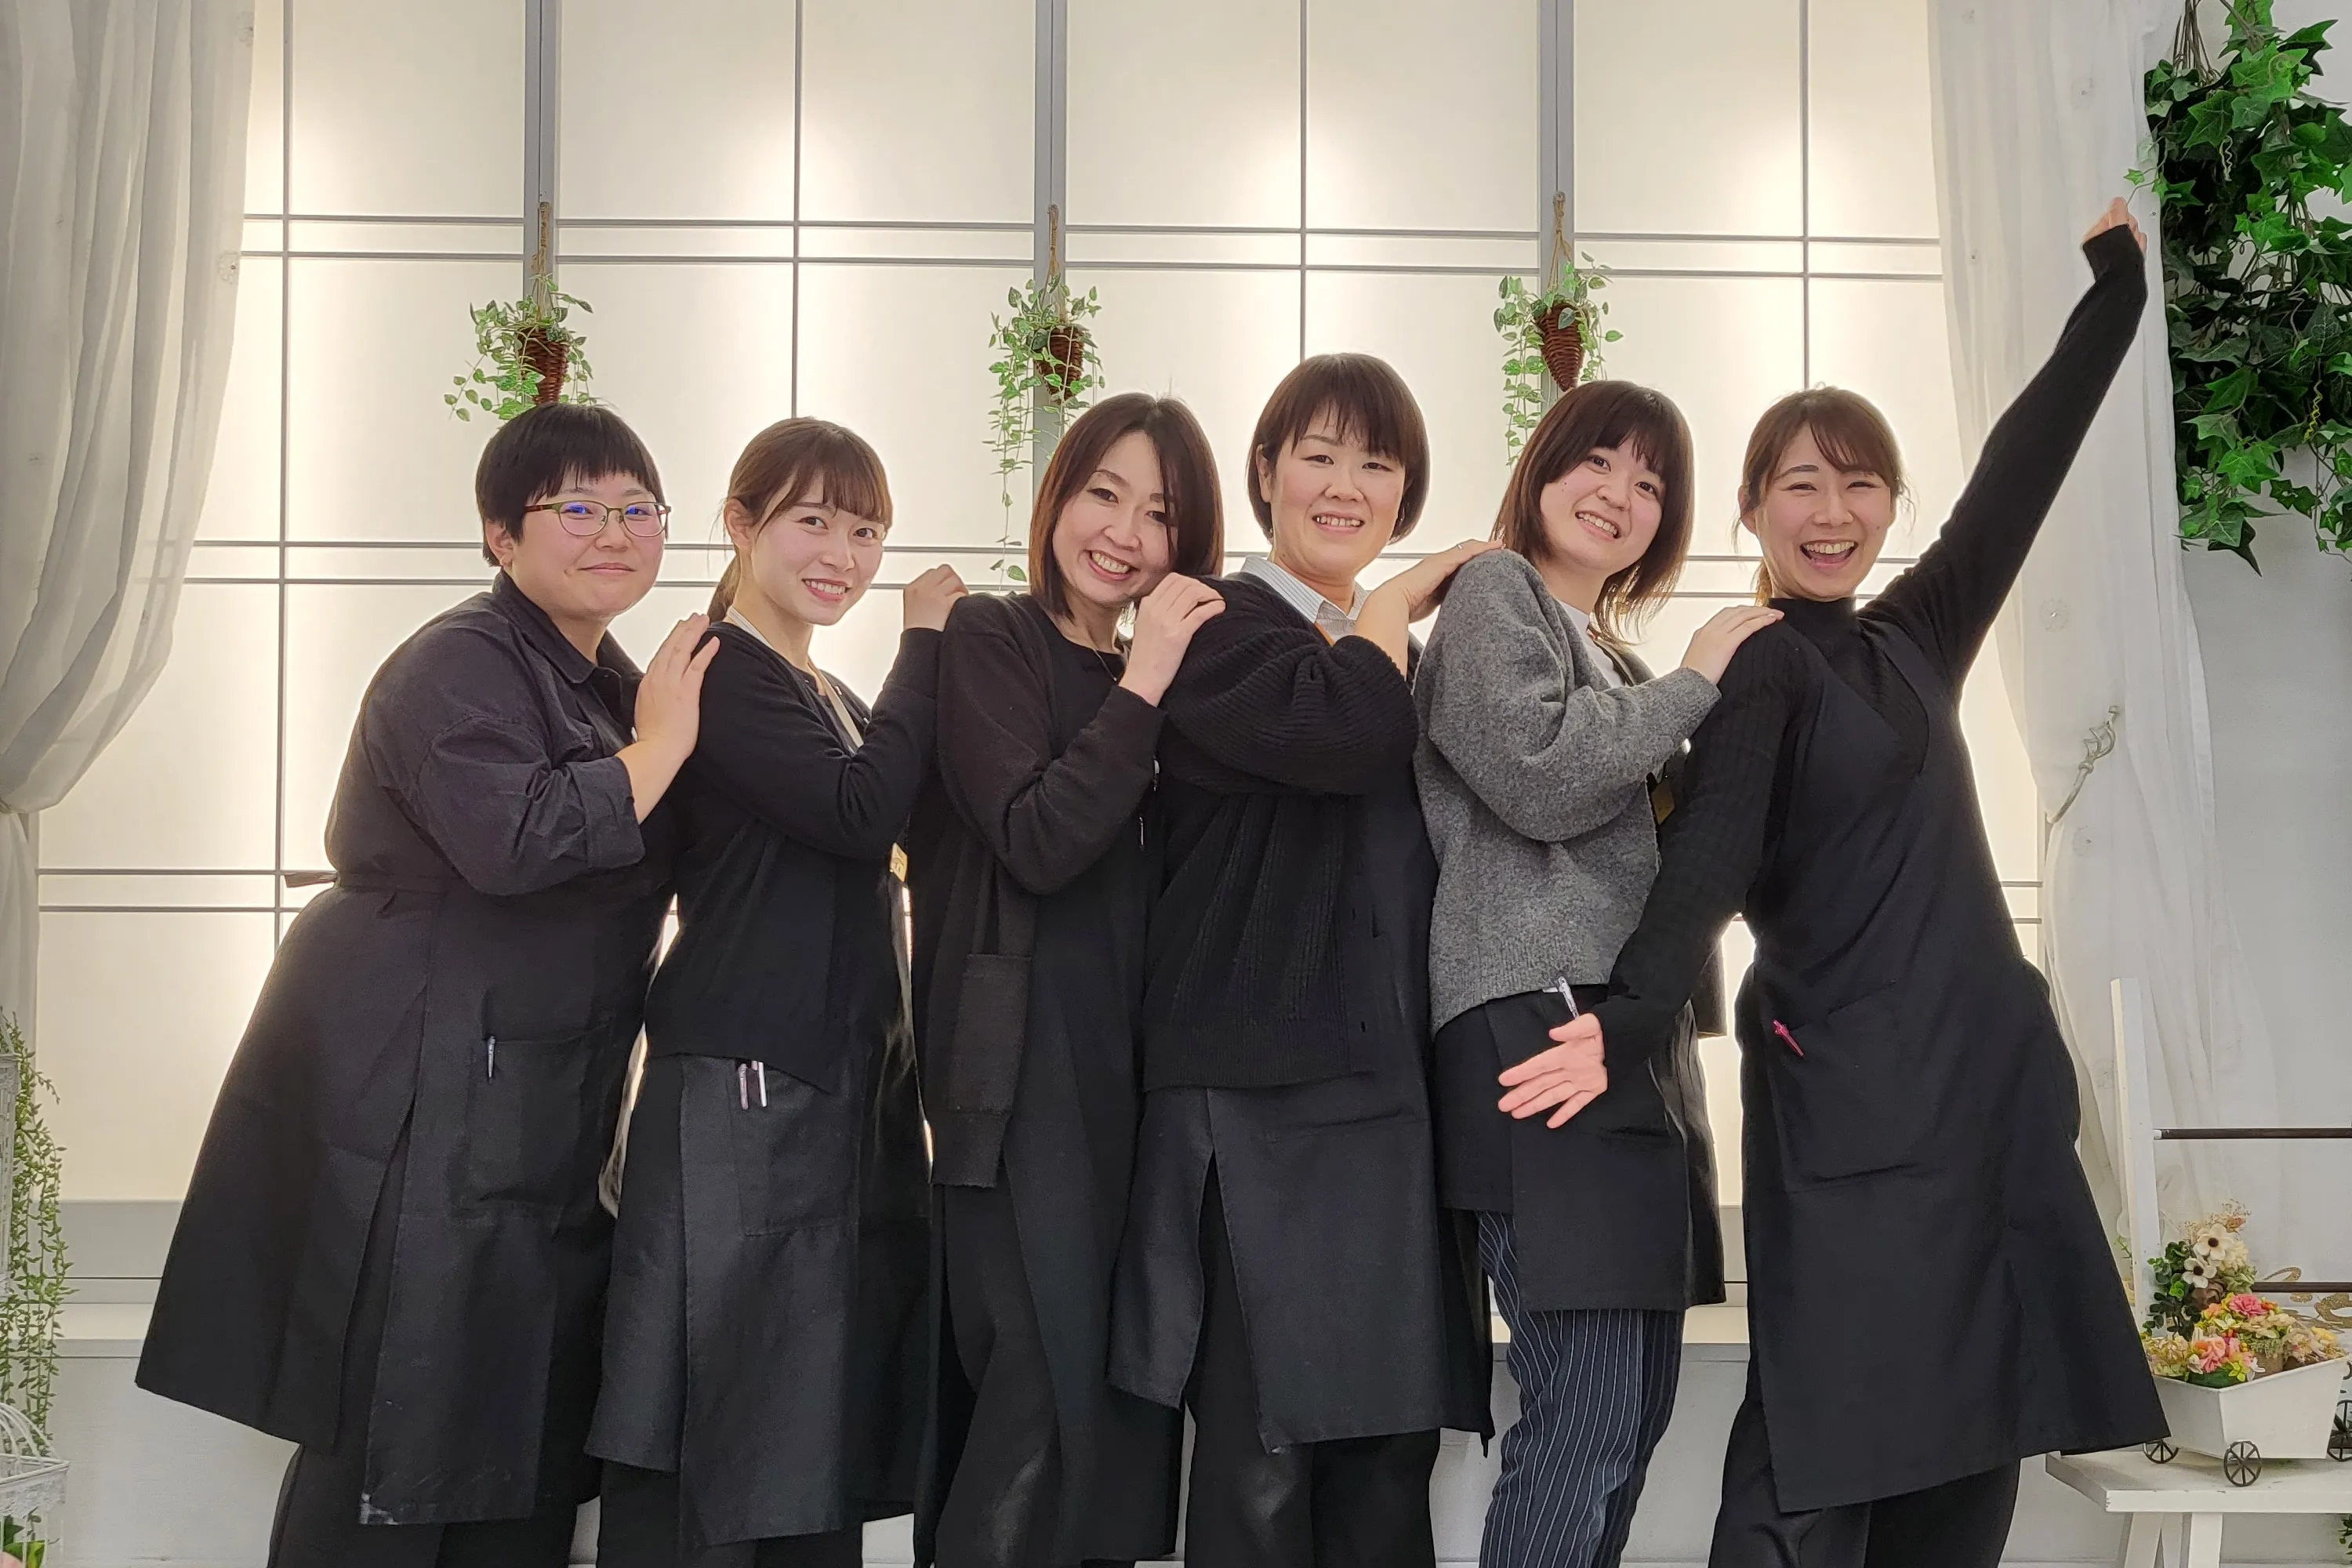 京都もなみ・スタジオもなみは、振袖・着物のプロフェッショナルが、お客さまの記念撮影をお手伝いします